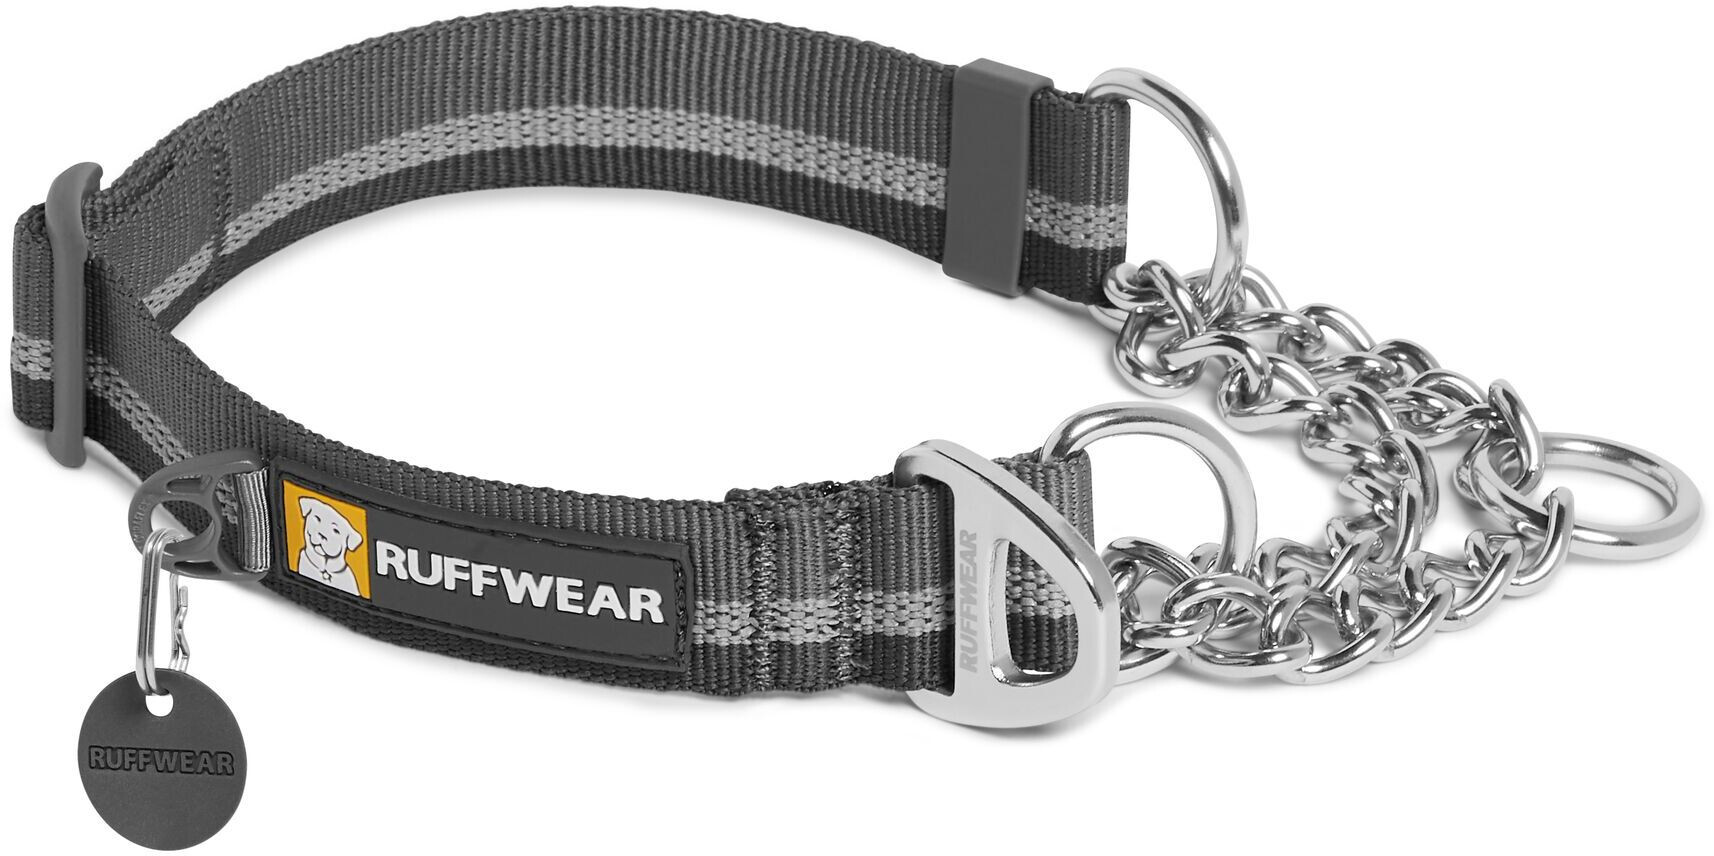 Ruffwear Chain Reaction Halsband grau/silber